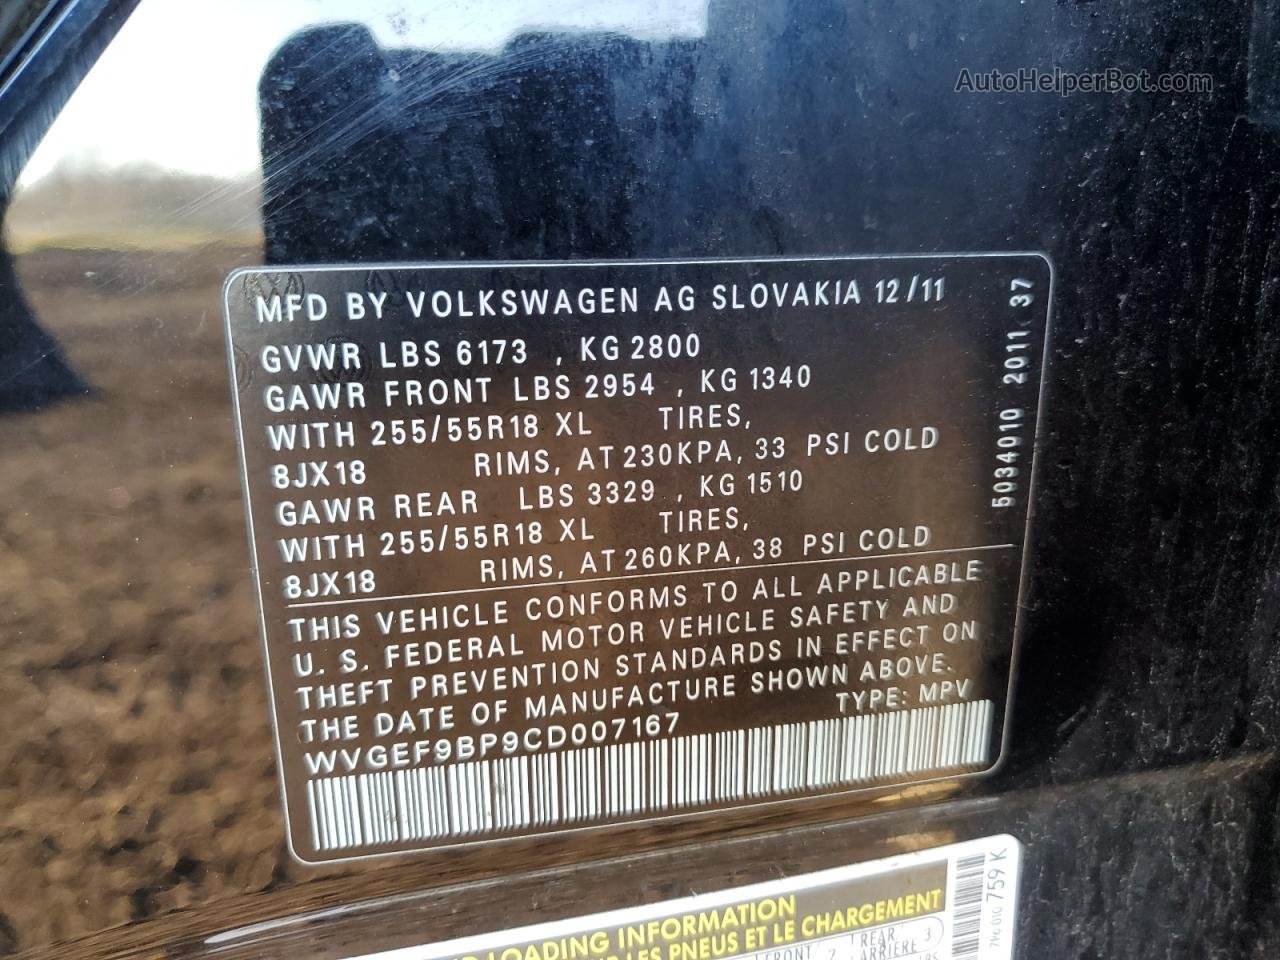 2012 Volkswagen Touareg V6 Black vin: WVGEF9BP9CD007167